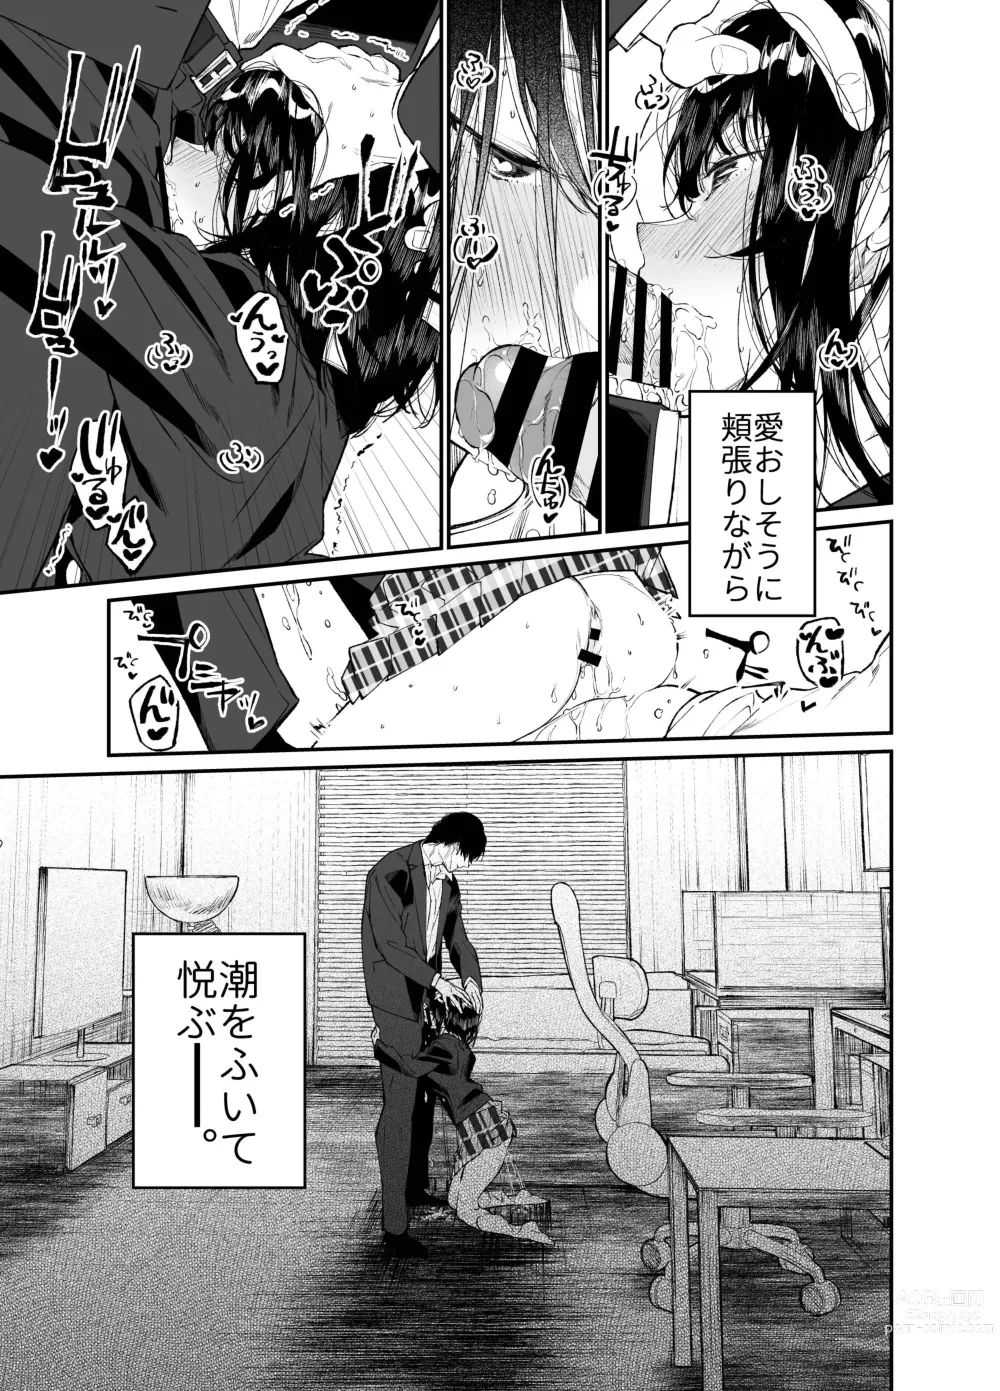 Page 61 of doujinshi Natsu, Shoujo wa Tonde, Hi ni Iru.